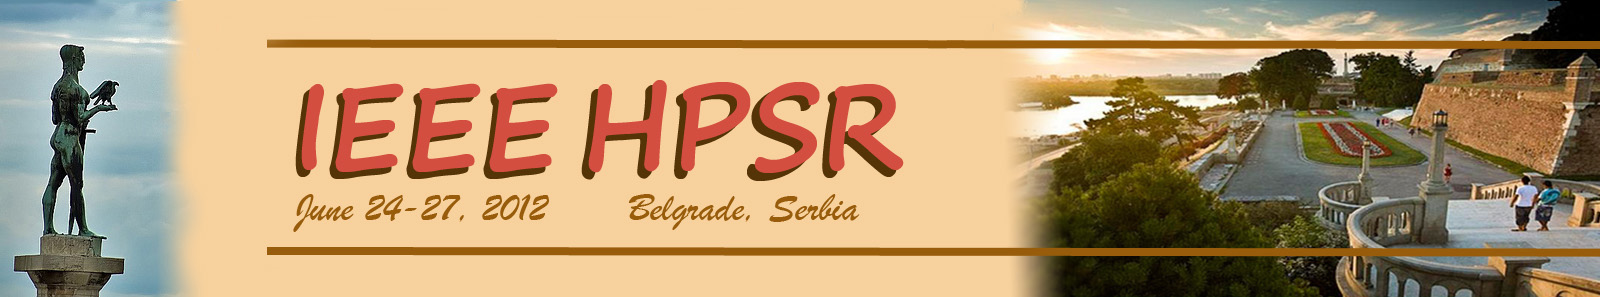 HPSR 2012 Belgrade, Serbia